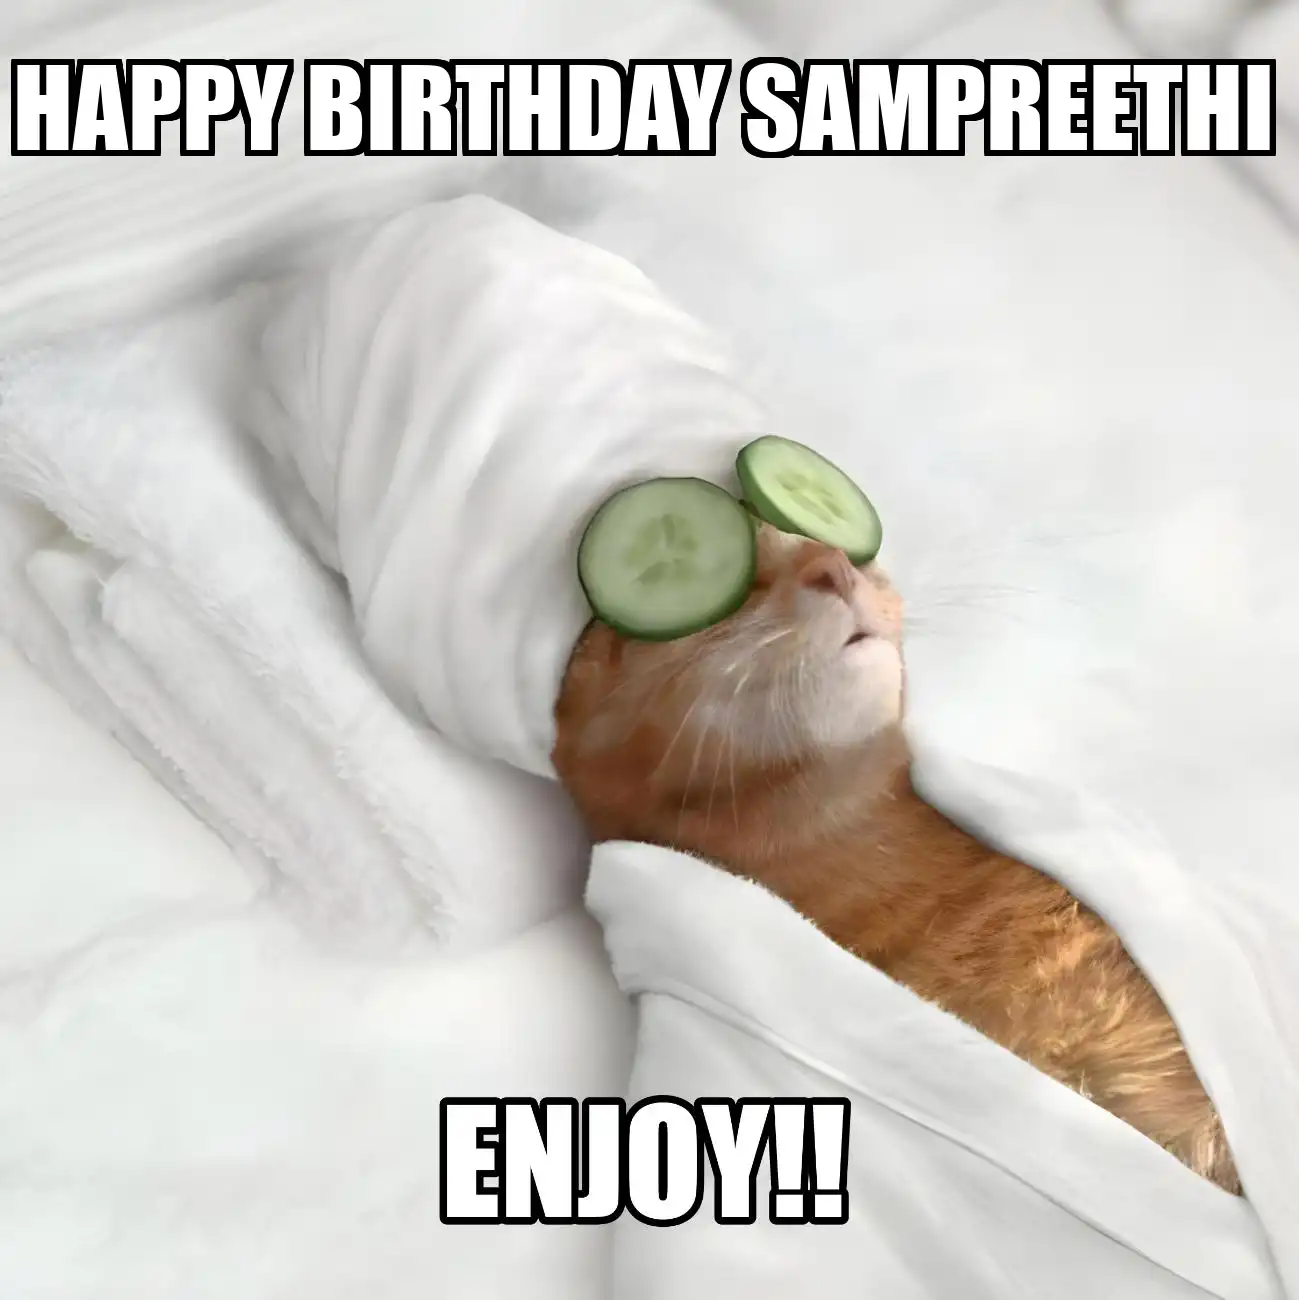 Happy Birthday Sampreethi Enjoy Cat Meme